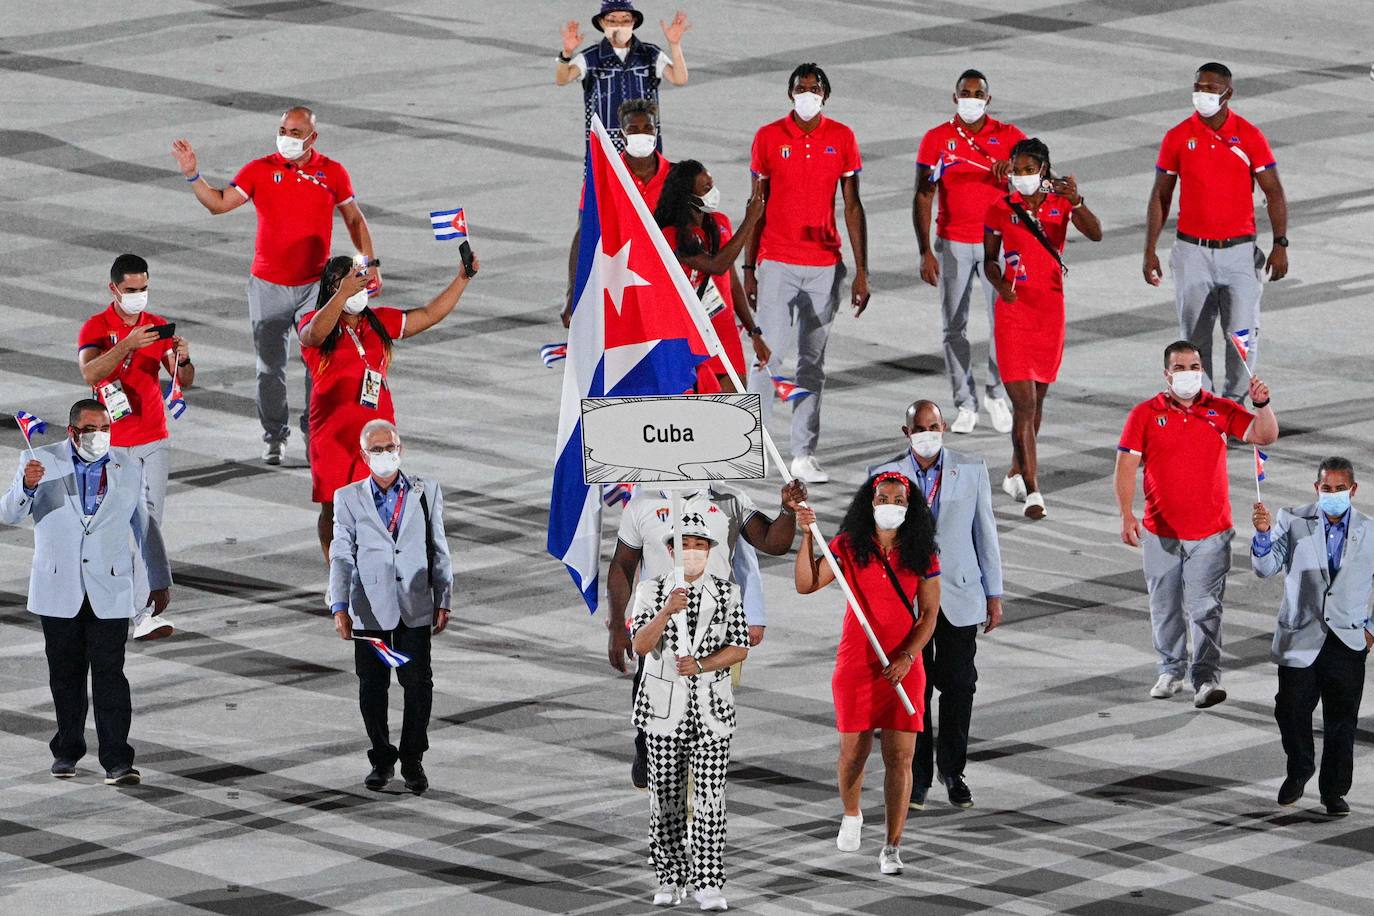 Mijain López Núñez y Yaime Pérez, abanderados de Cuba, encabezan la delegación durante la ceremonia de inauguración de los Juegos Olímpicos de Tokio 2020.